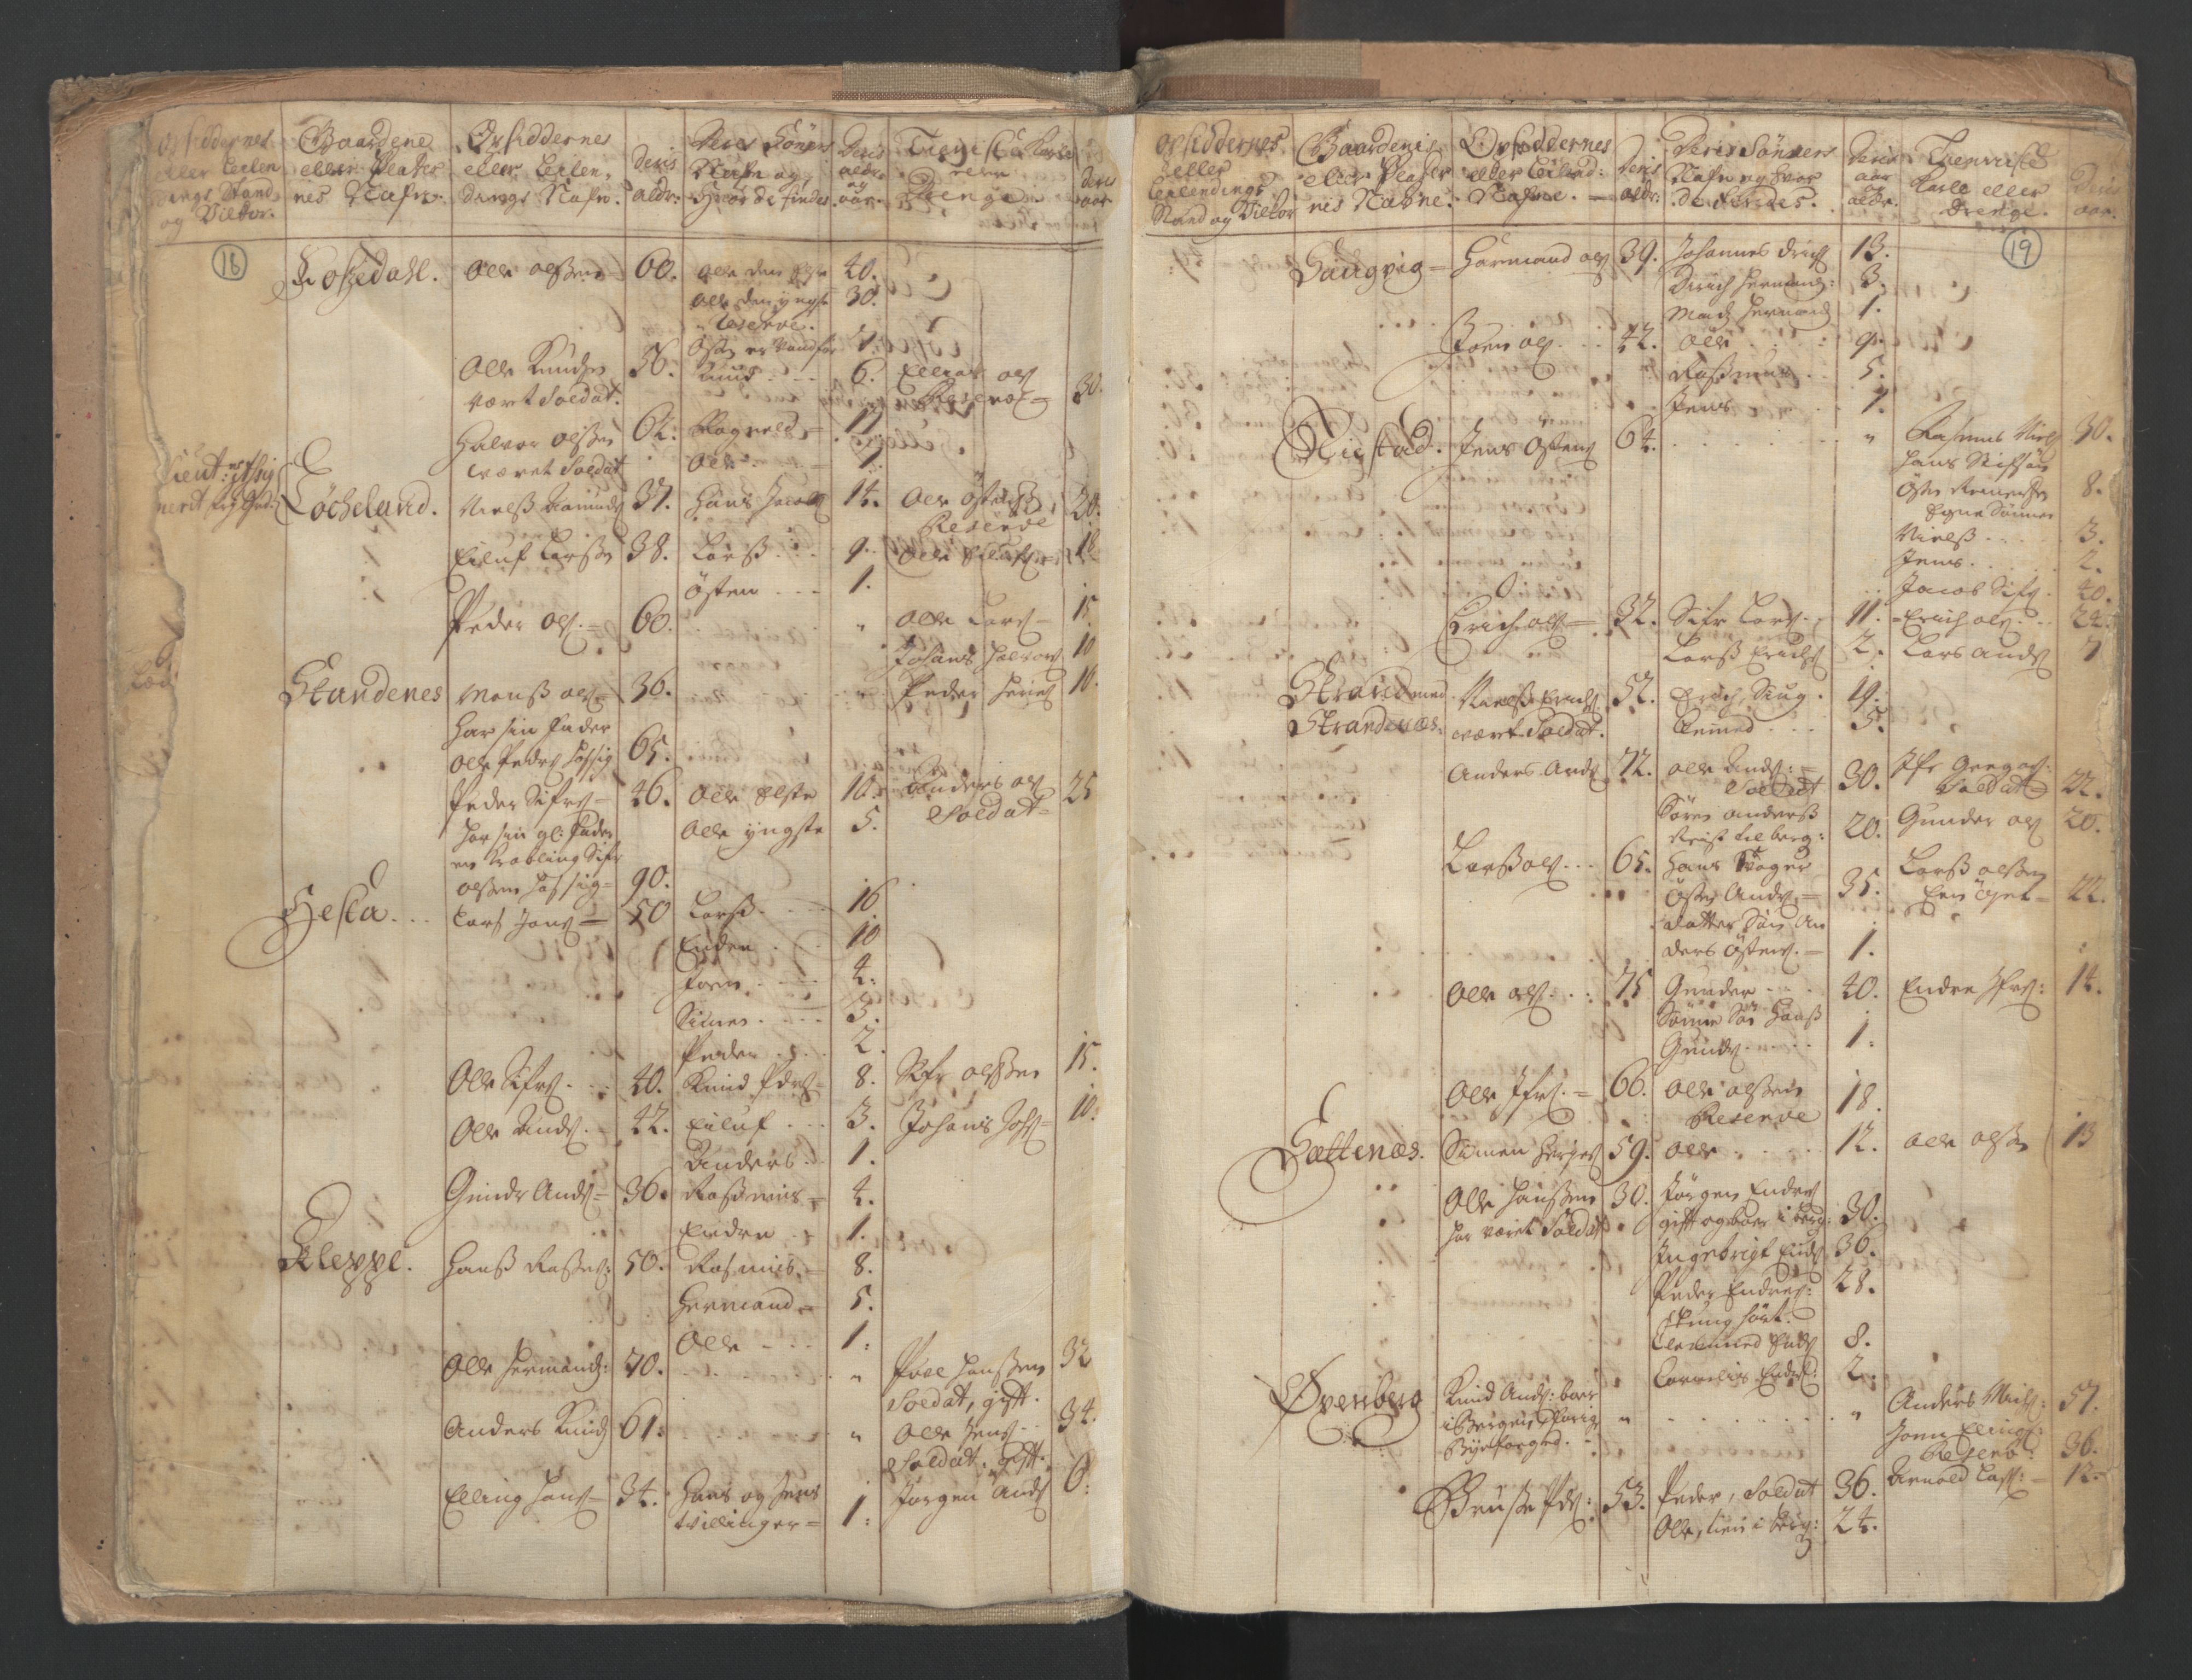 RA, Census (manntall) 1701, no. 9: Sunnfjord fogderi, Nordfjord fogderi and Svanø birk, 1701, p. 18-19